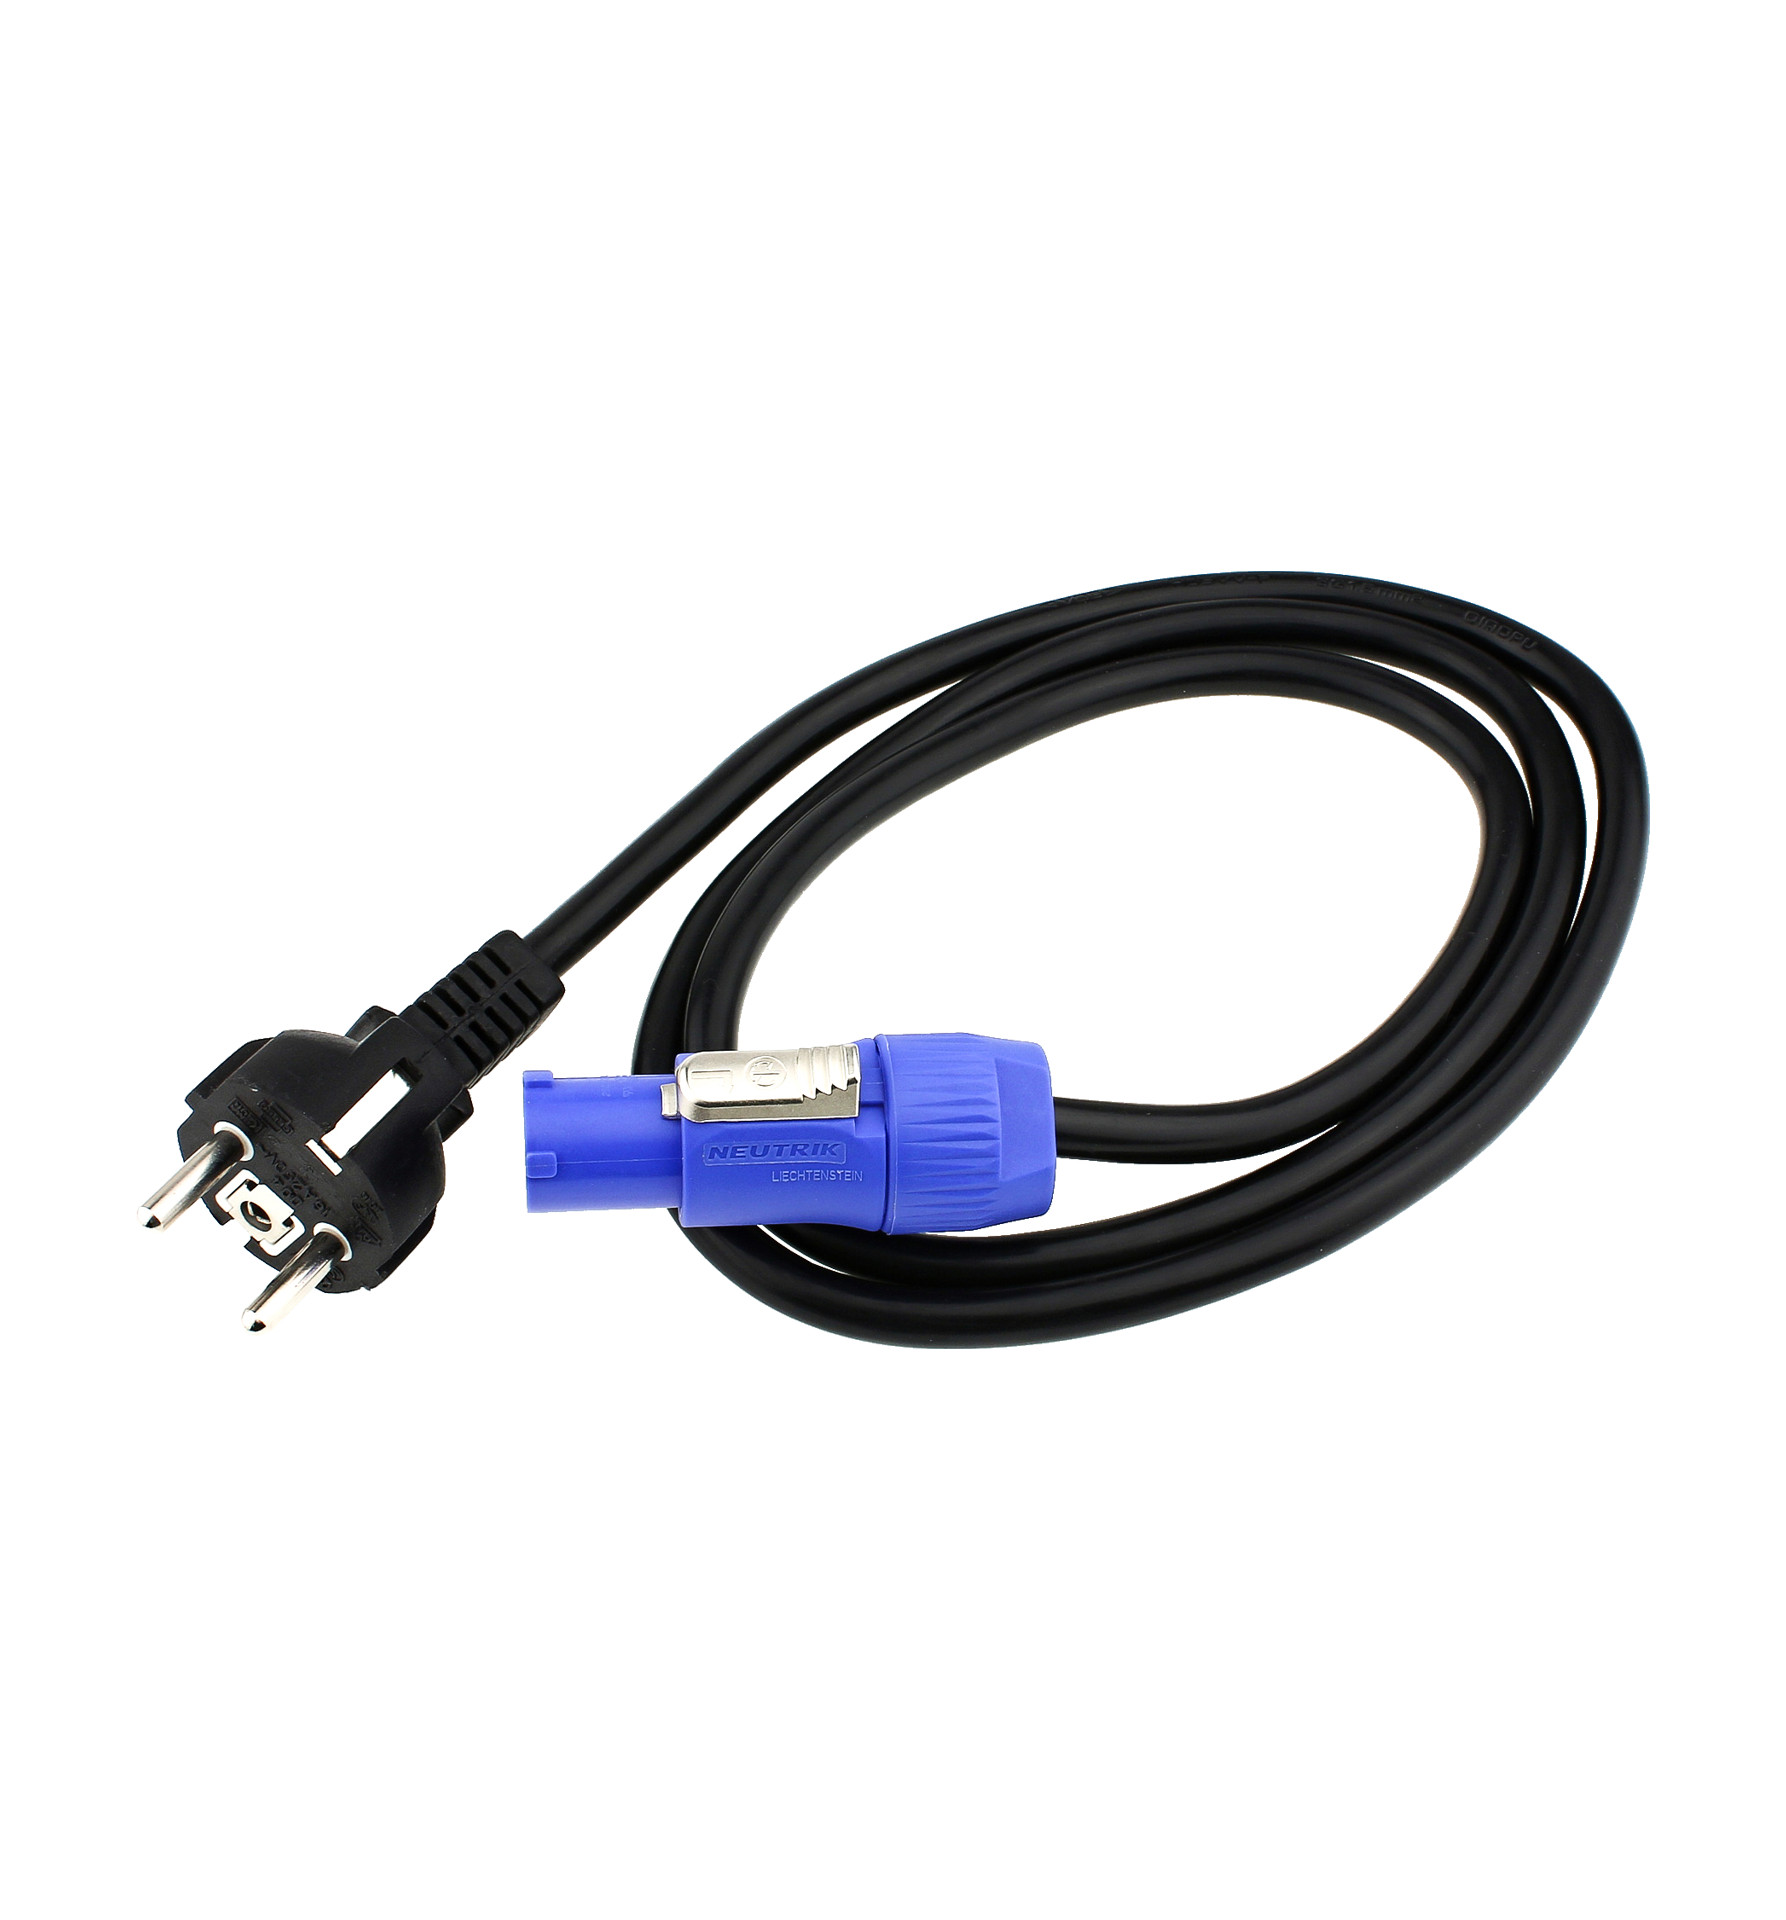 Силовые кабели ROBE Mains Cable PowerCon In/Schuko 2m силовые кабели isotek cable evo3 premier c15 1 5m